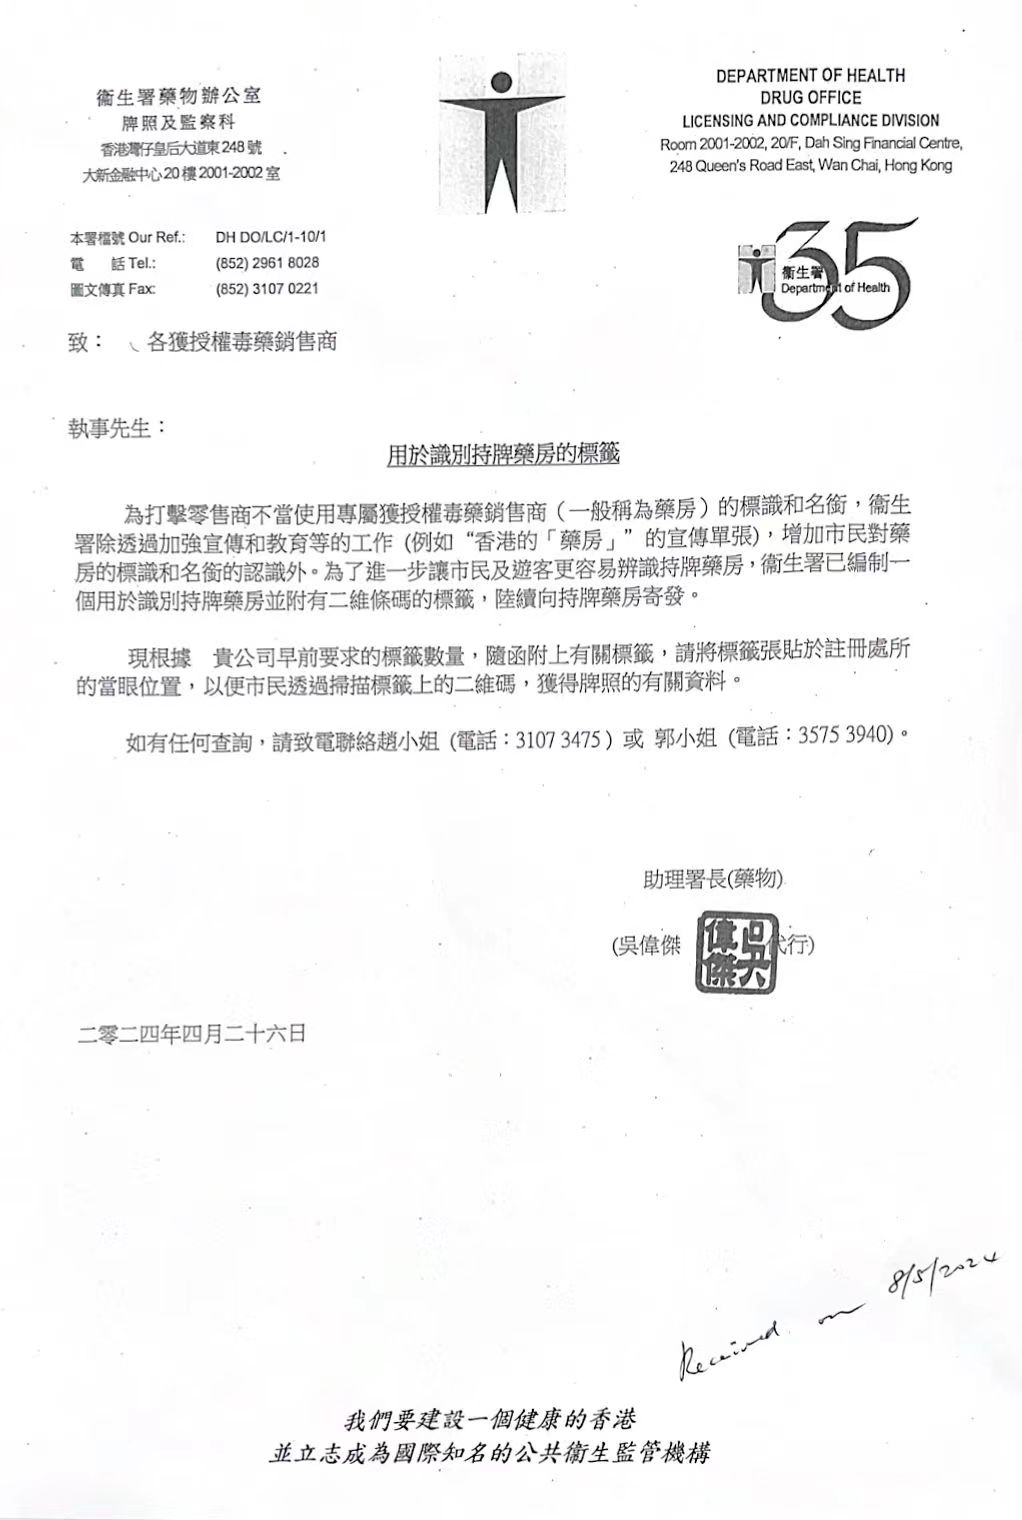 香港卫生署关于“Rx持牌药房”文件